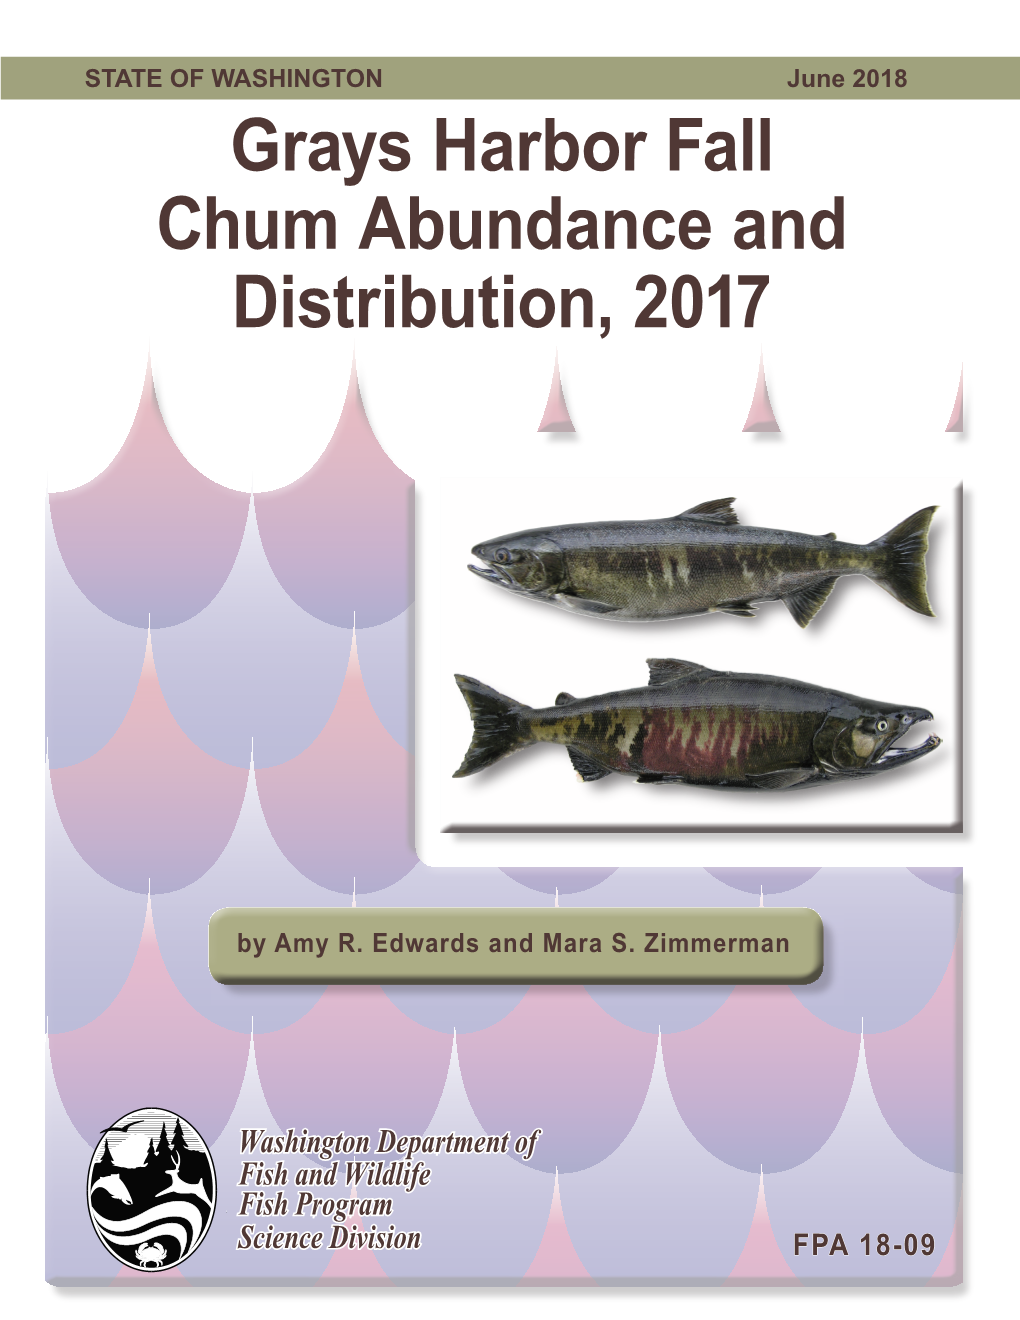 Grays Harbor Fall Chum Abundance and Distribution, 2017